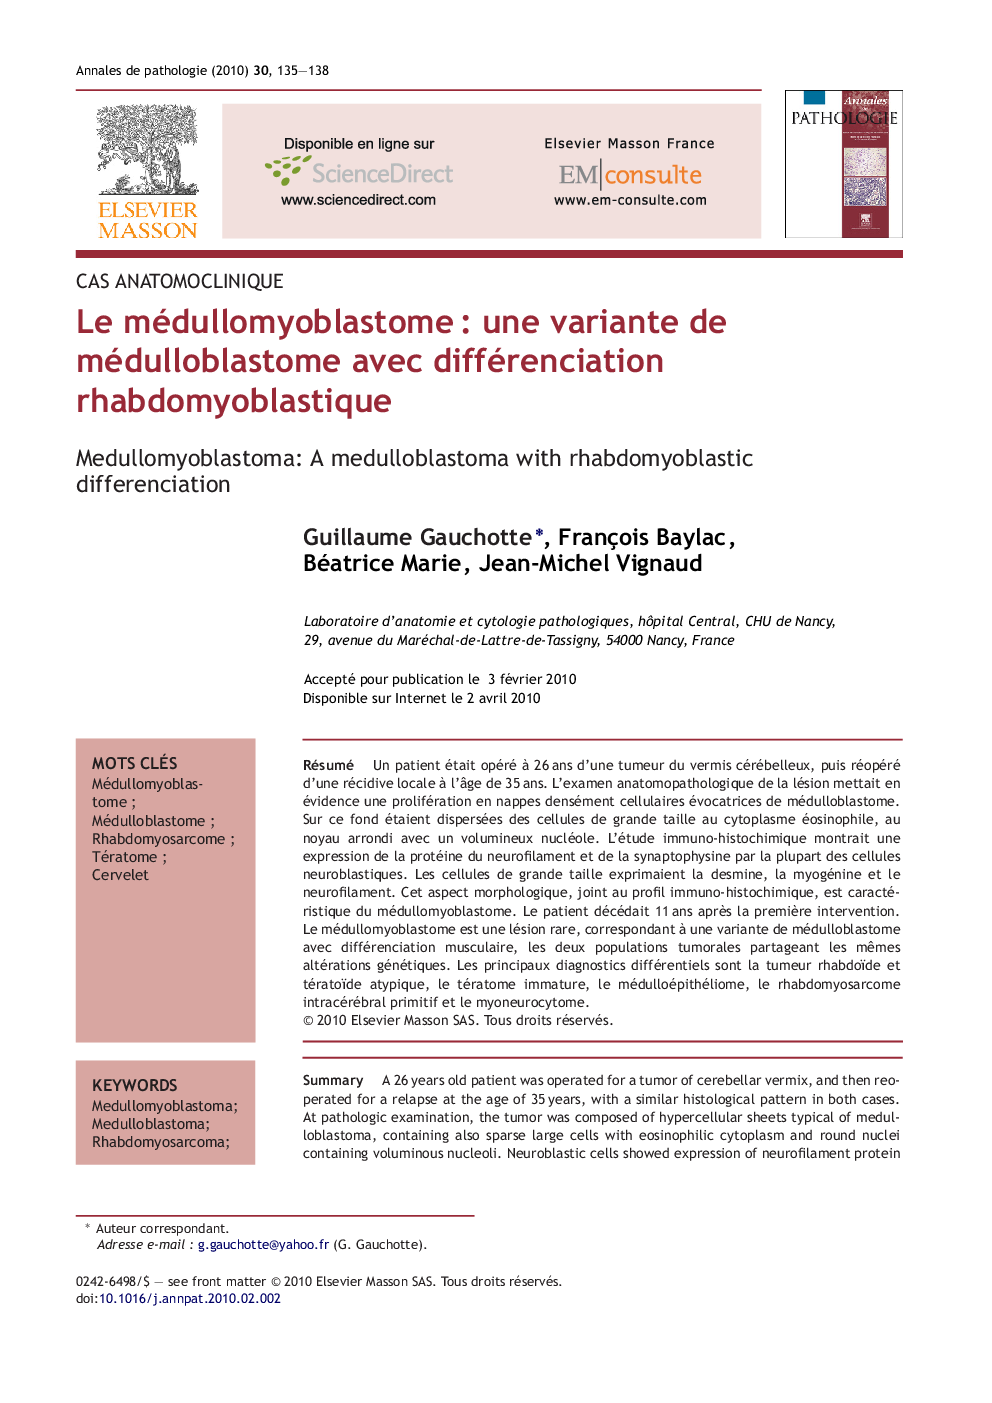 Le médullomyoblastomeÂ : une variante de médulloblastome avec différenciation rhabdomyoblastique